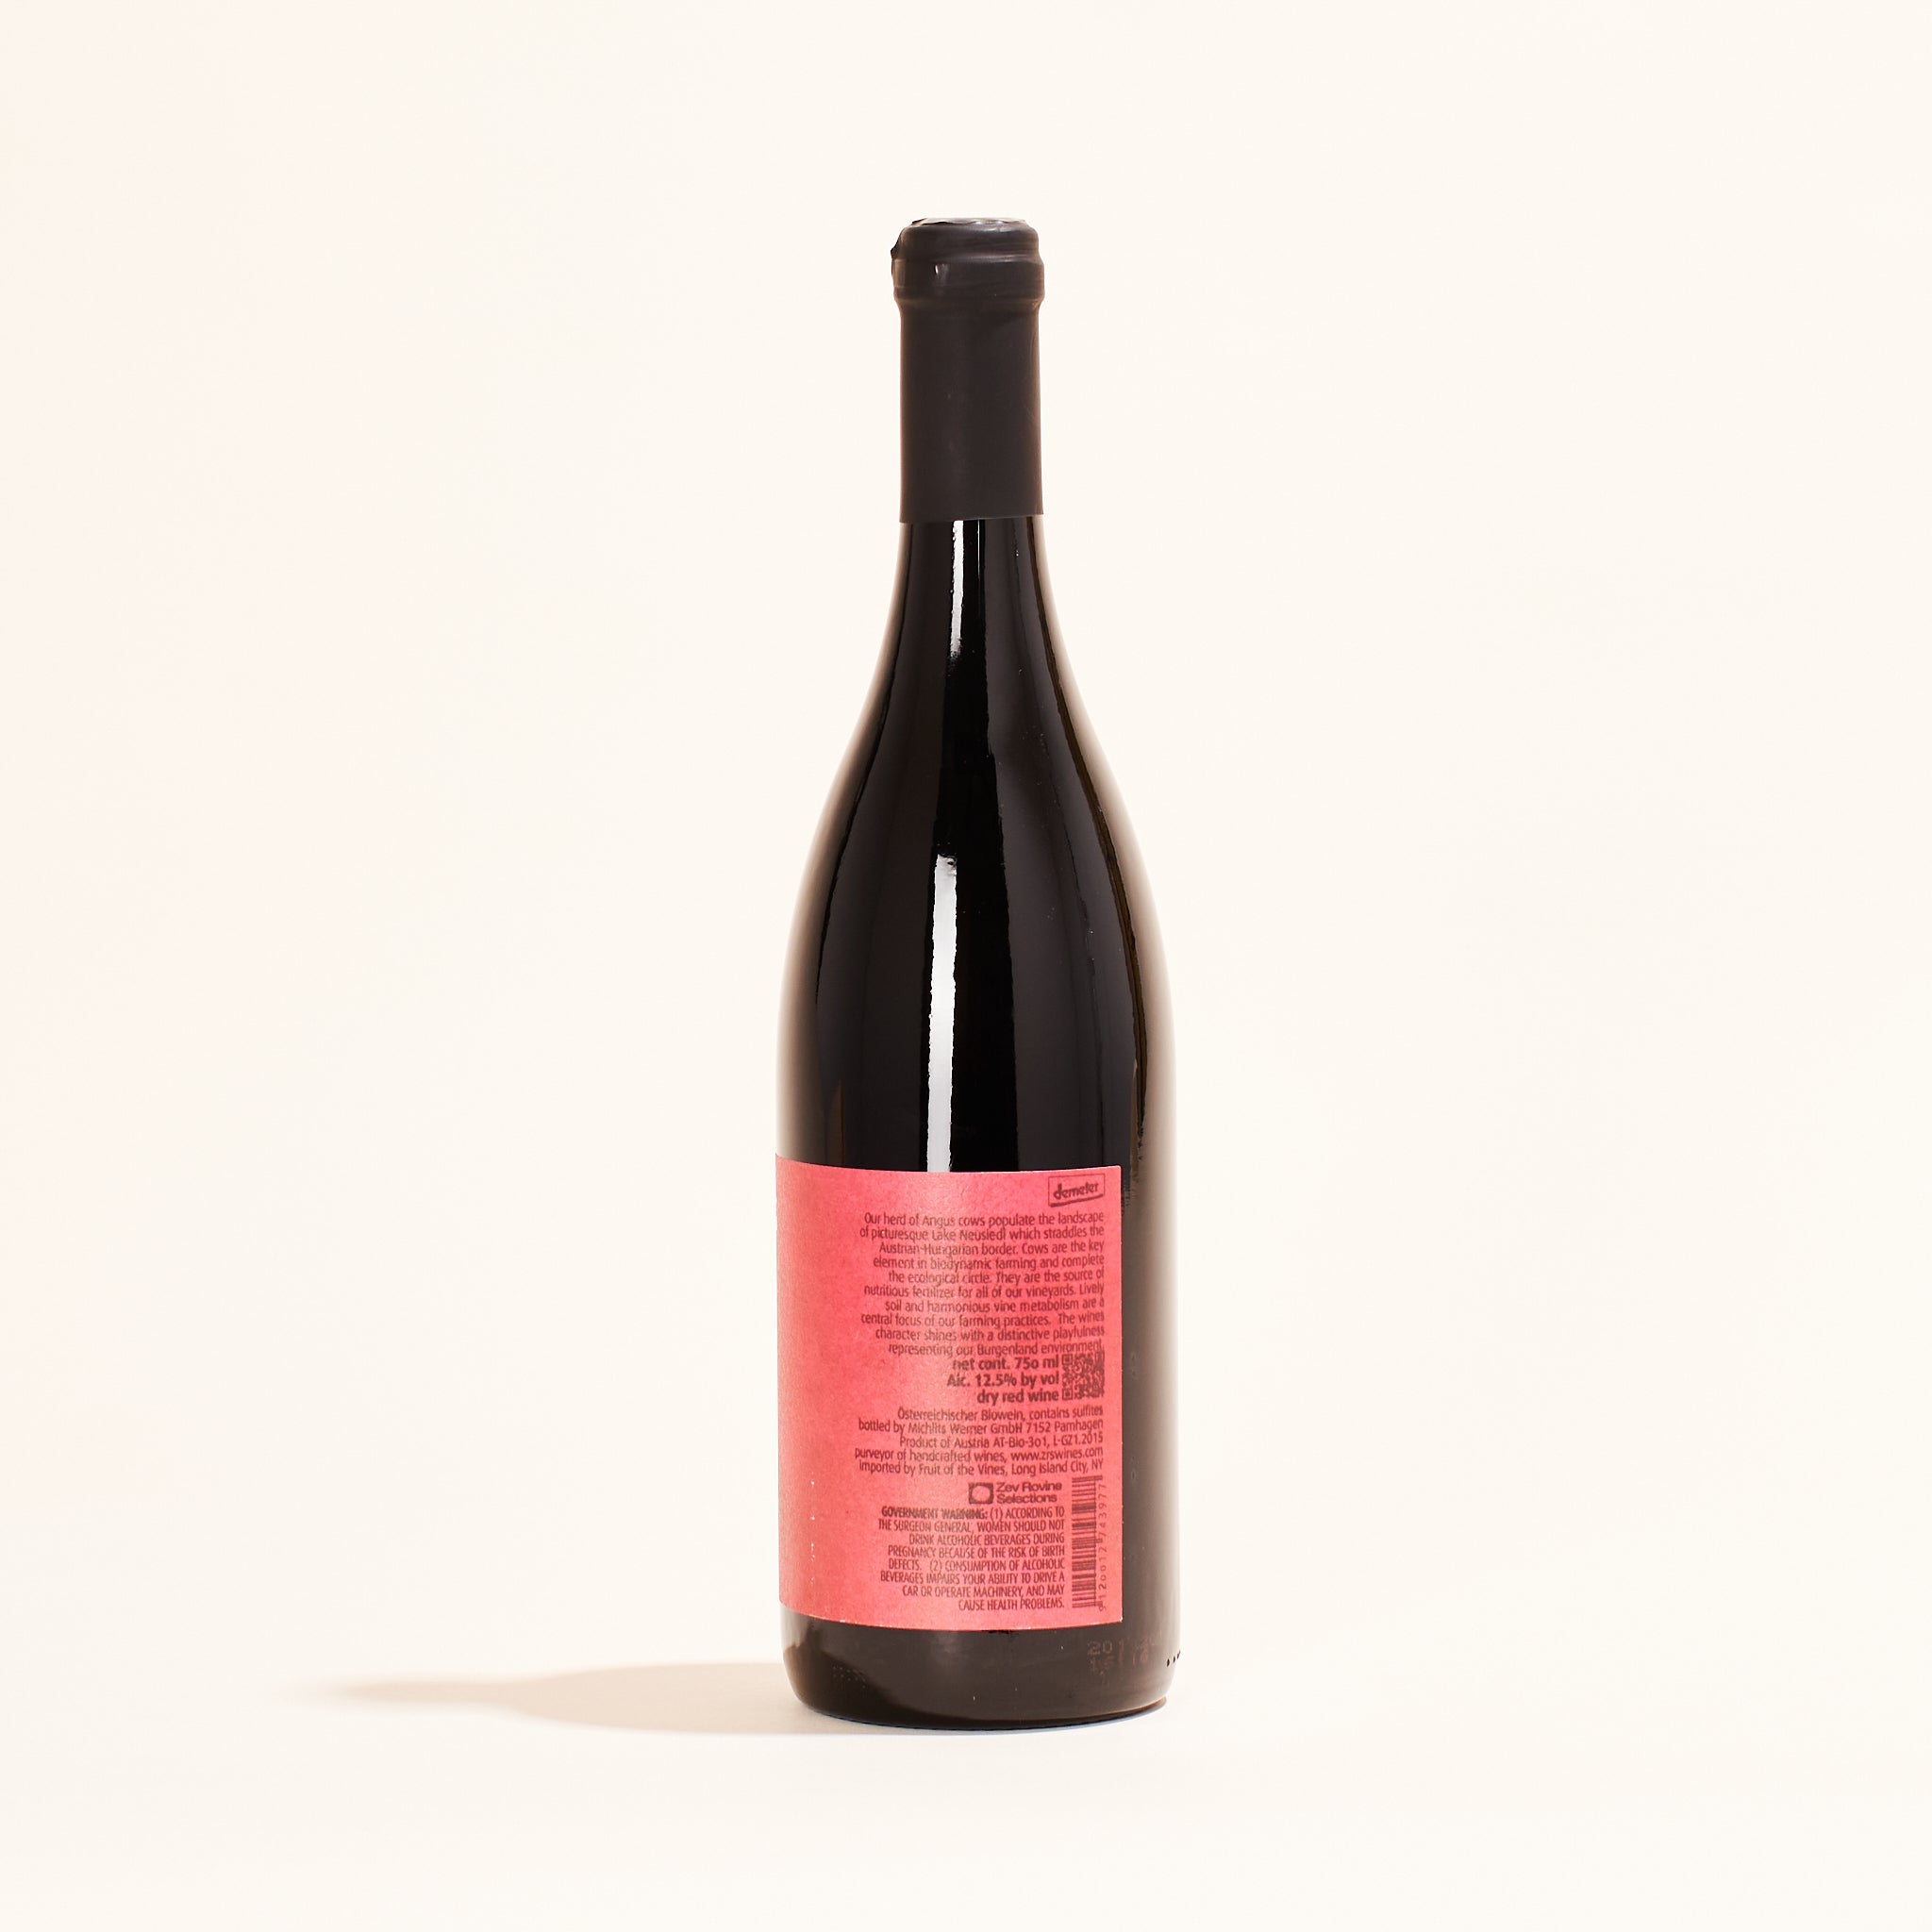 Meinklang "Graupert" Zweigelt Zweigelt natural red wine Burgenland, Austria back label